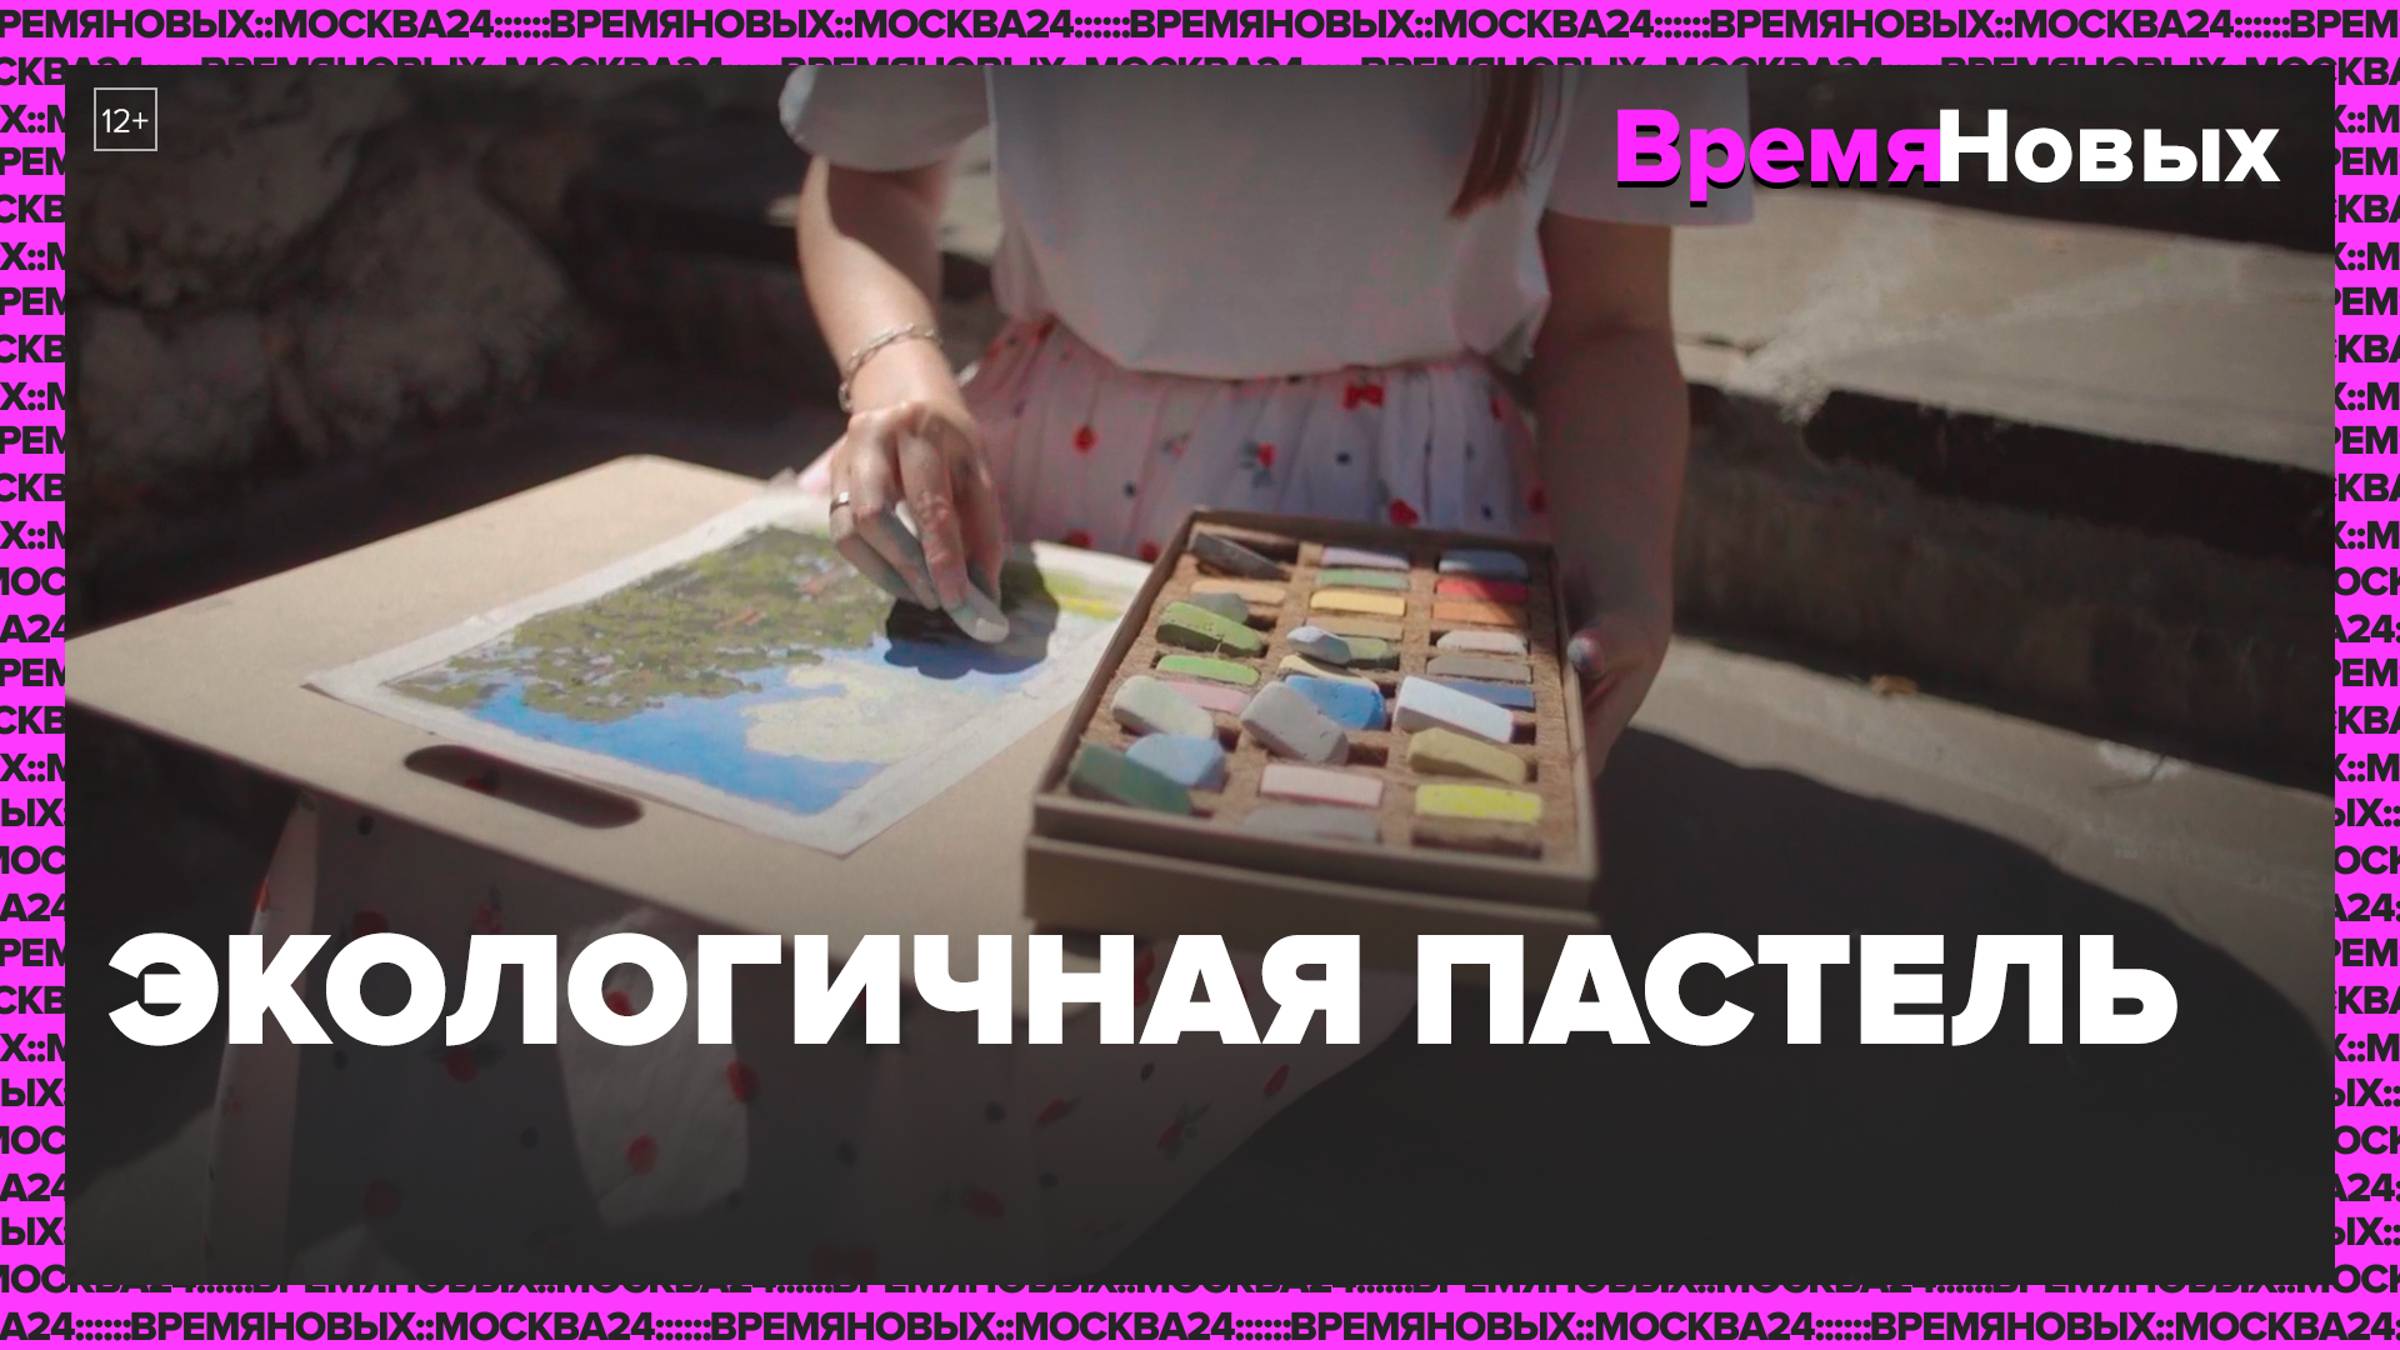 Экологичная пастель — Москва24|Контент